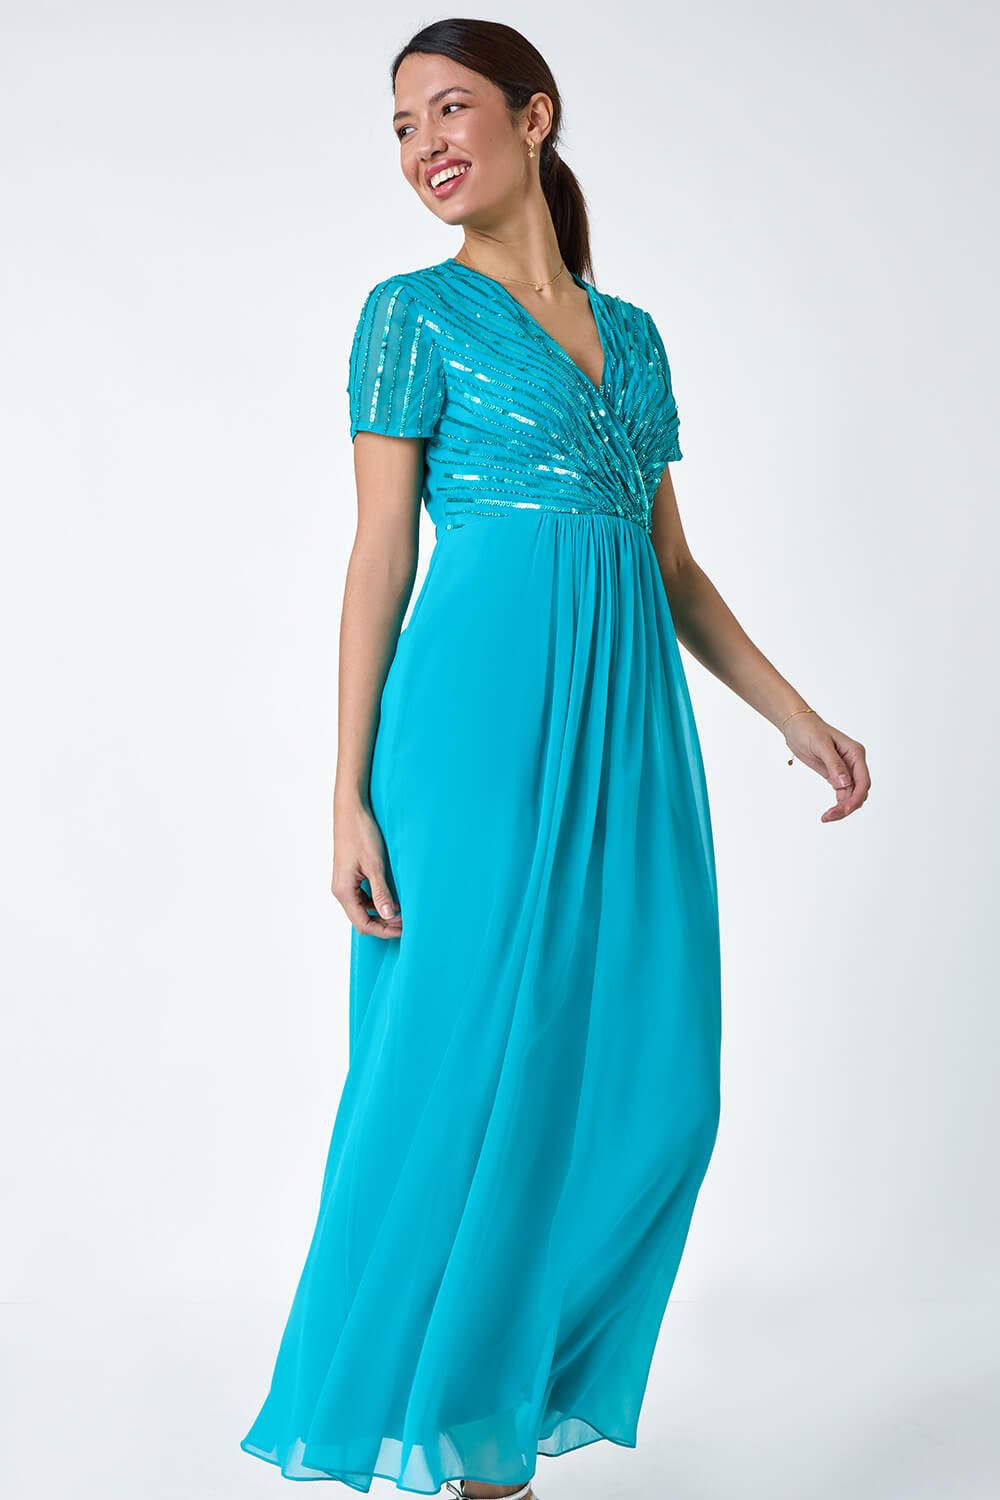 Teal Sequin Embellished Maxi Dress, Image 2 of 5